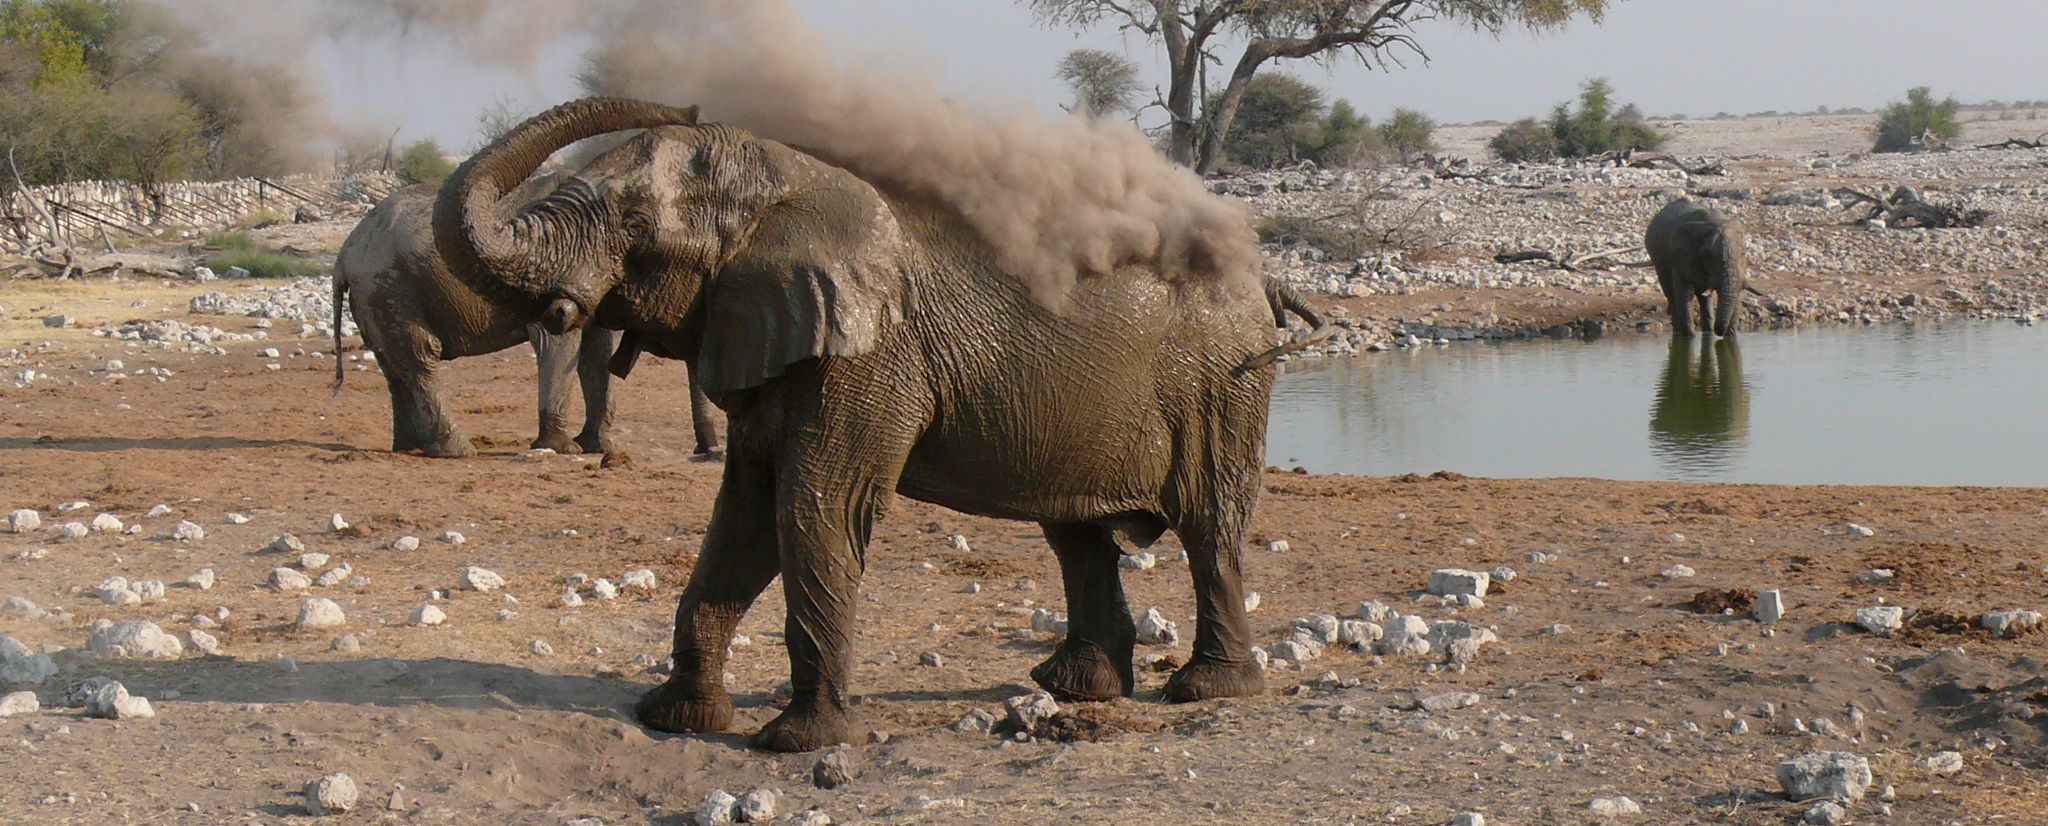 Abenteuersafaris in Namibia - Elefant am Sandbaden